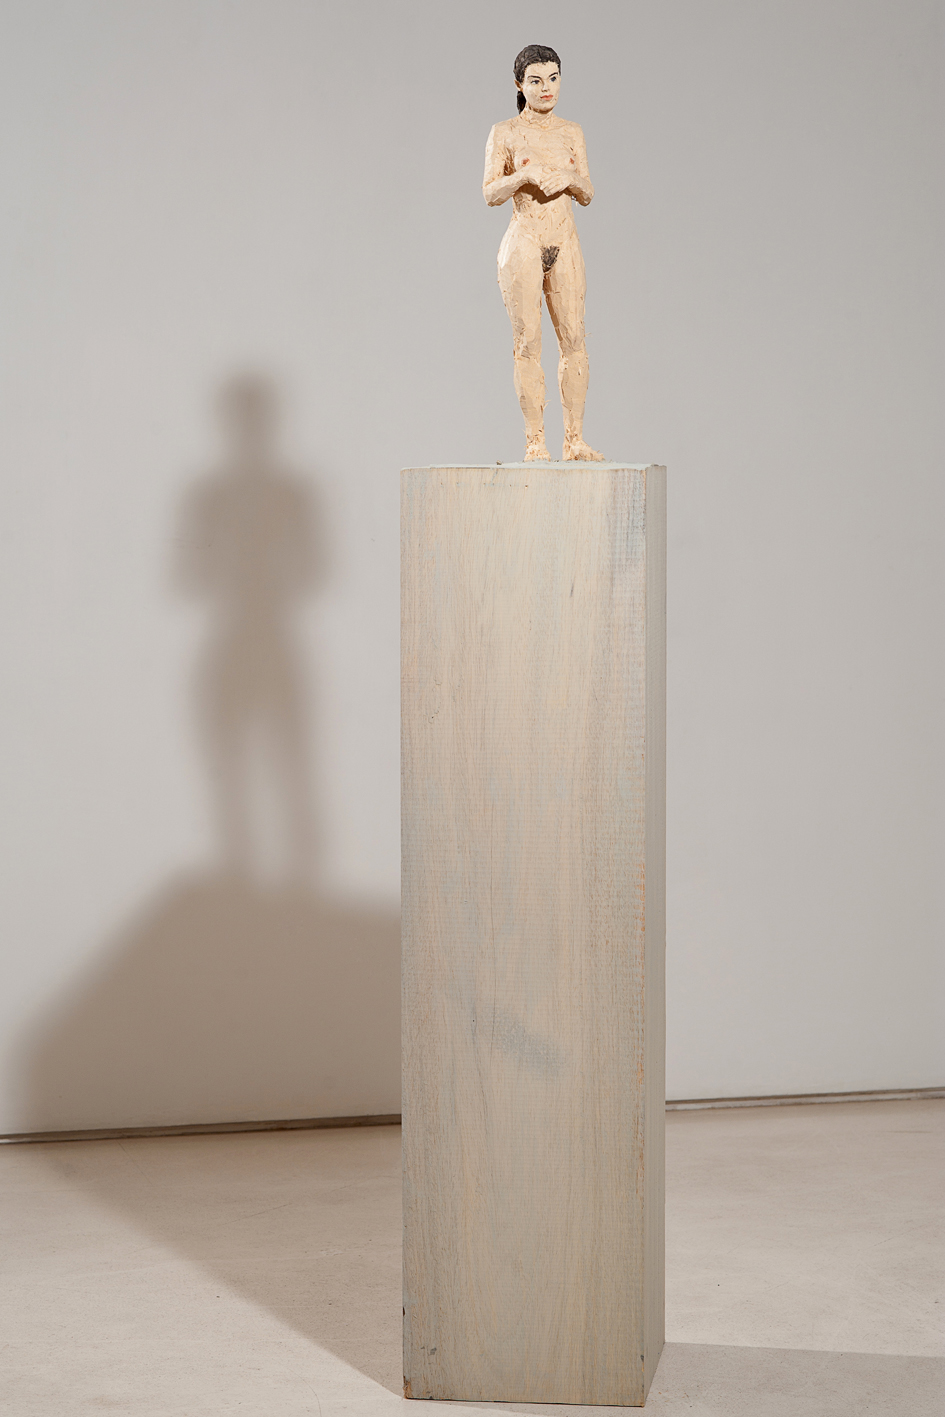 "Senza titolo" 2012, scultura in legno wawa dipinto, 24 x 30 x 164 cm